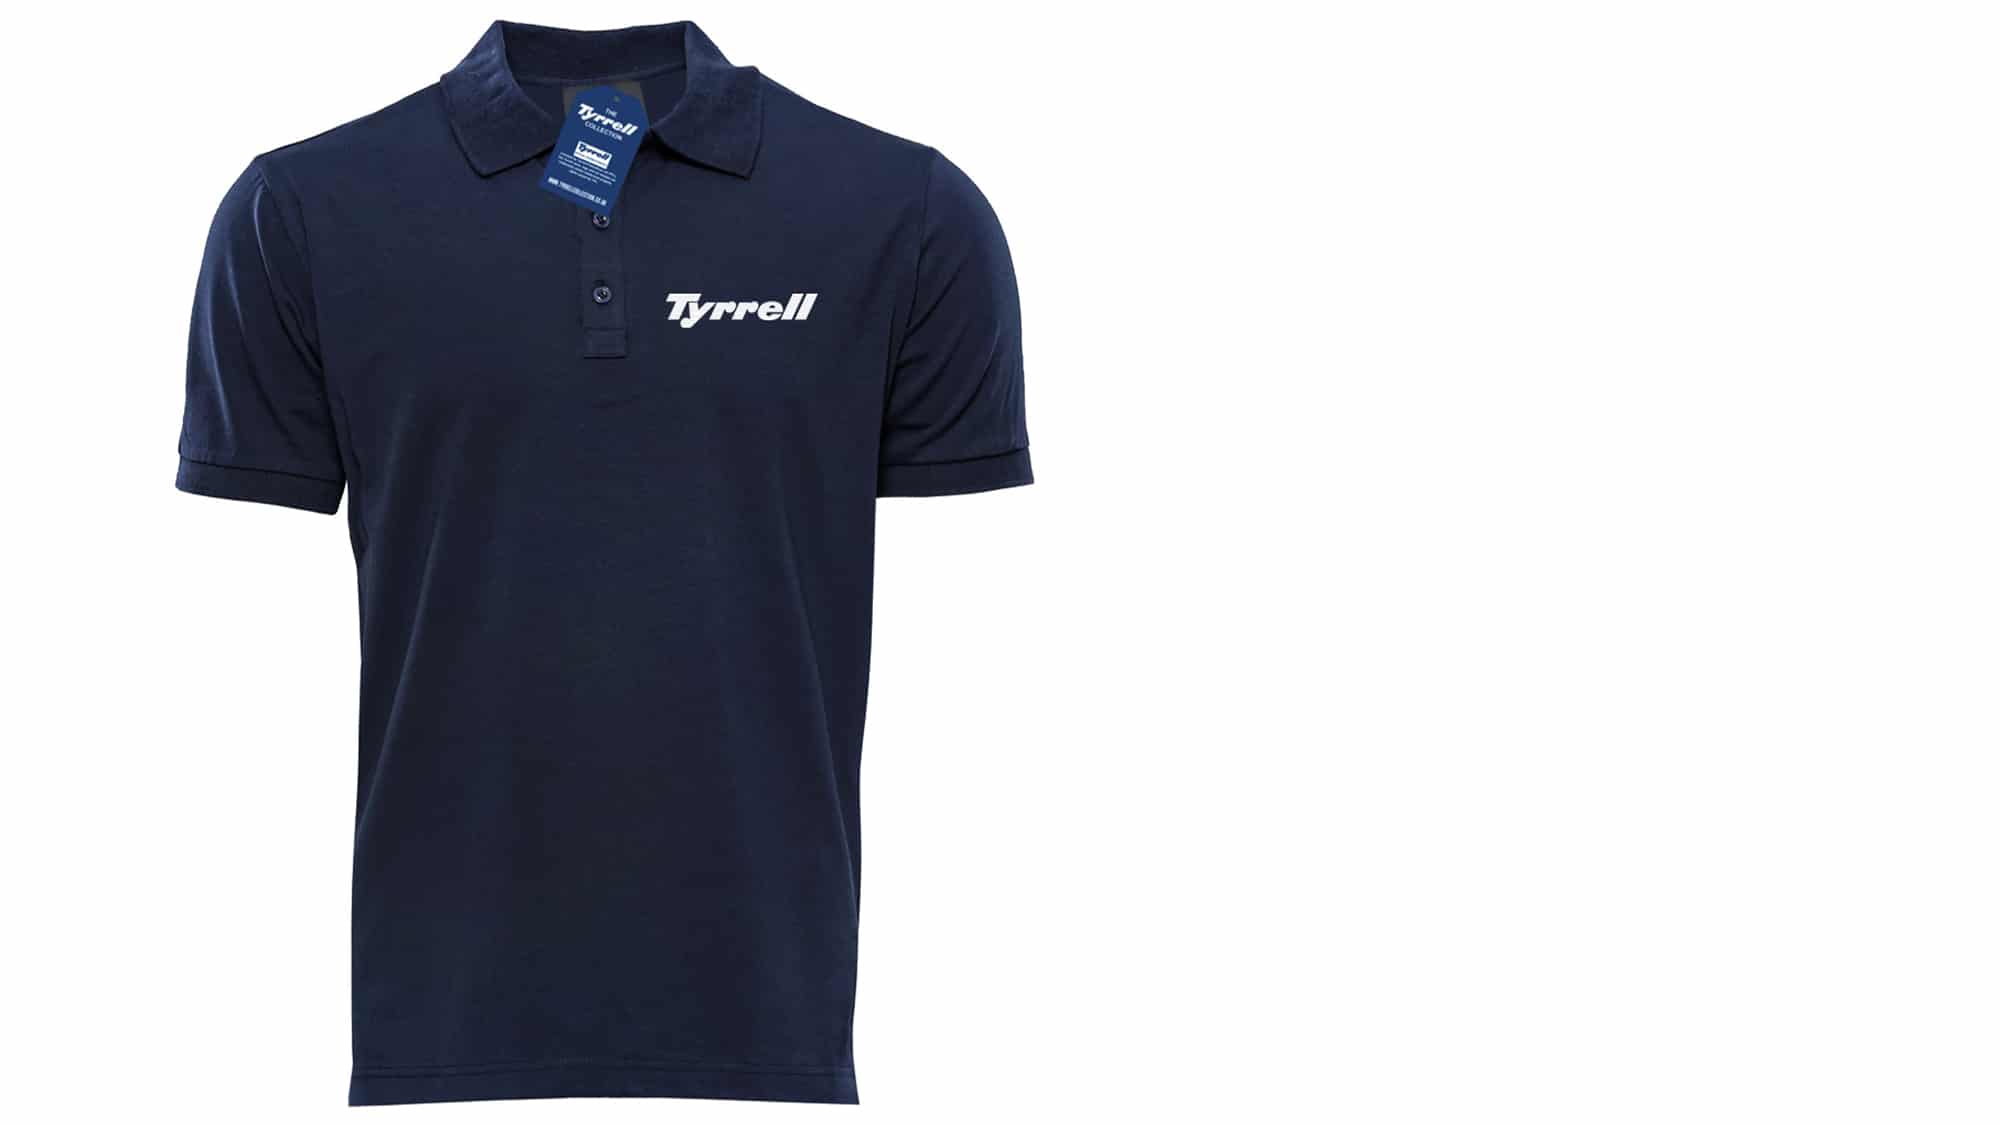 Tyrrell polo shirt